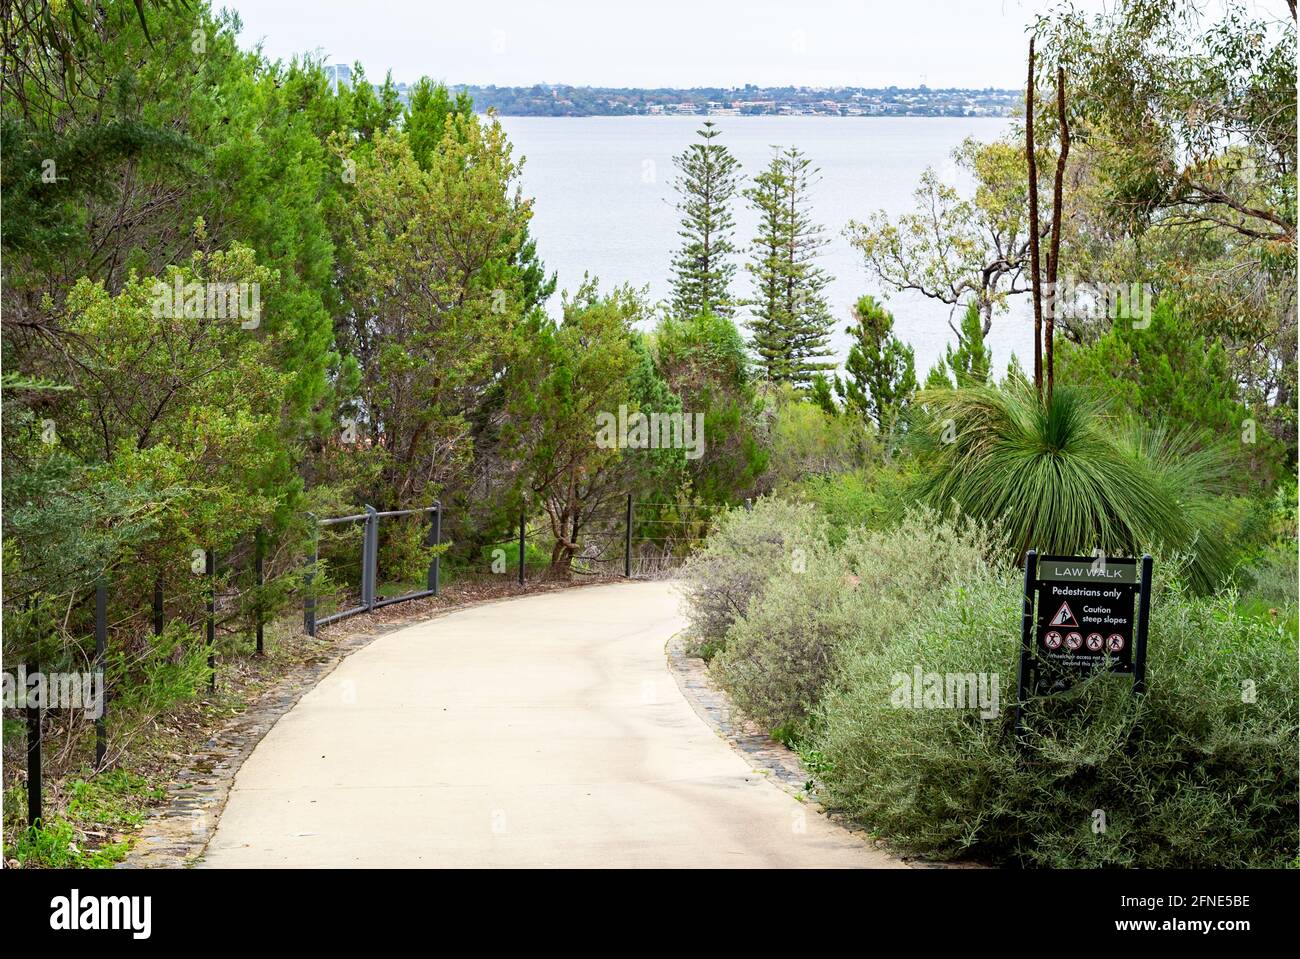 Der Law Walk in Kings Park ist ein urbaner Buschland-Wanderweg. Es ist eine 2.5 km lange Rundwanderung, die Besuchern einen malerischen Blick auf den Swan River bietet Stockfoto